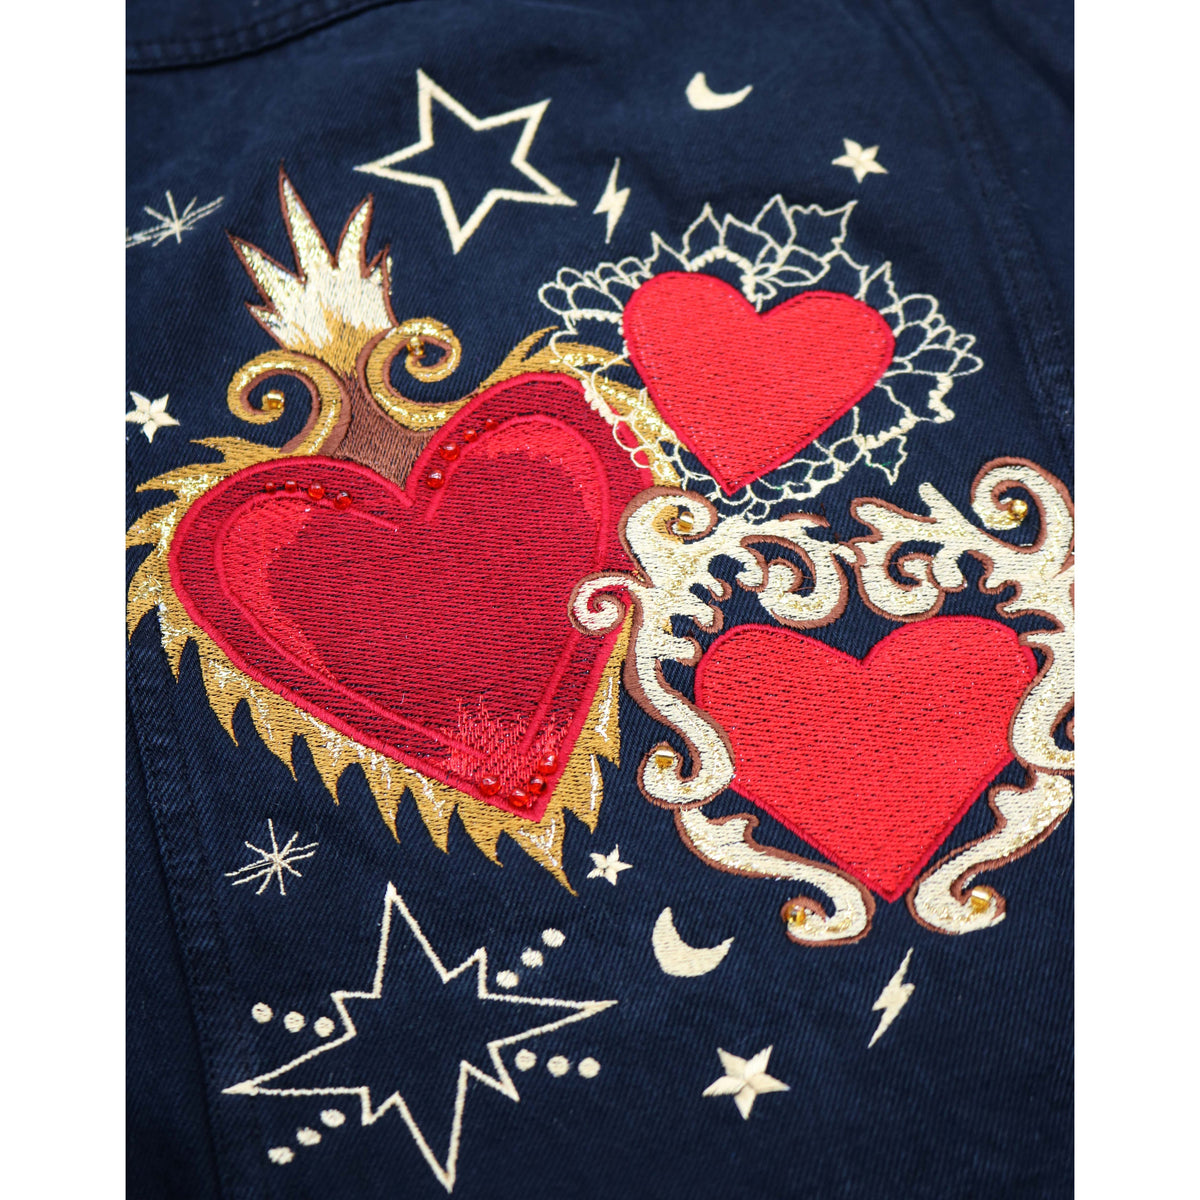 Amore Embroidered Denim Jacket